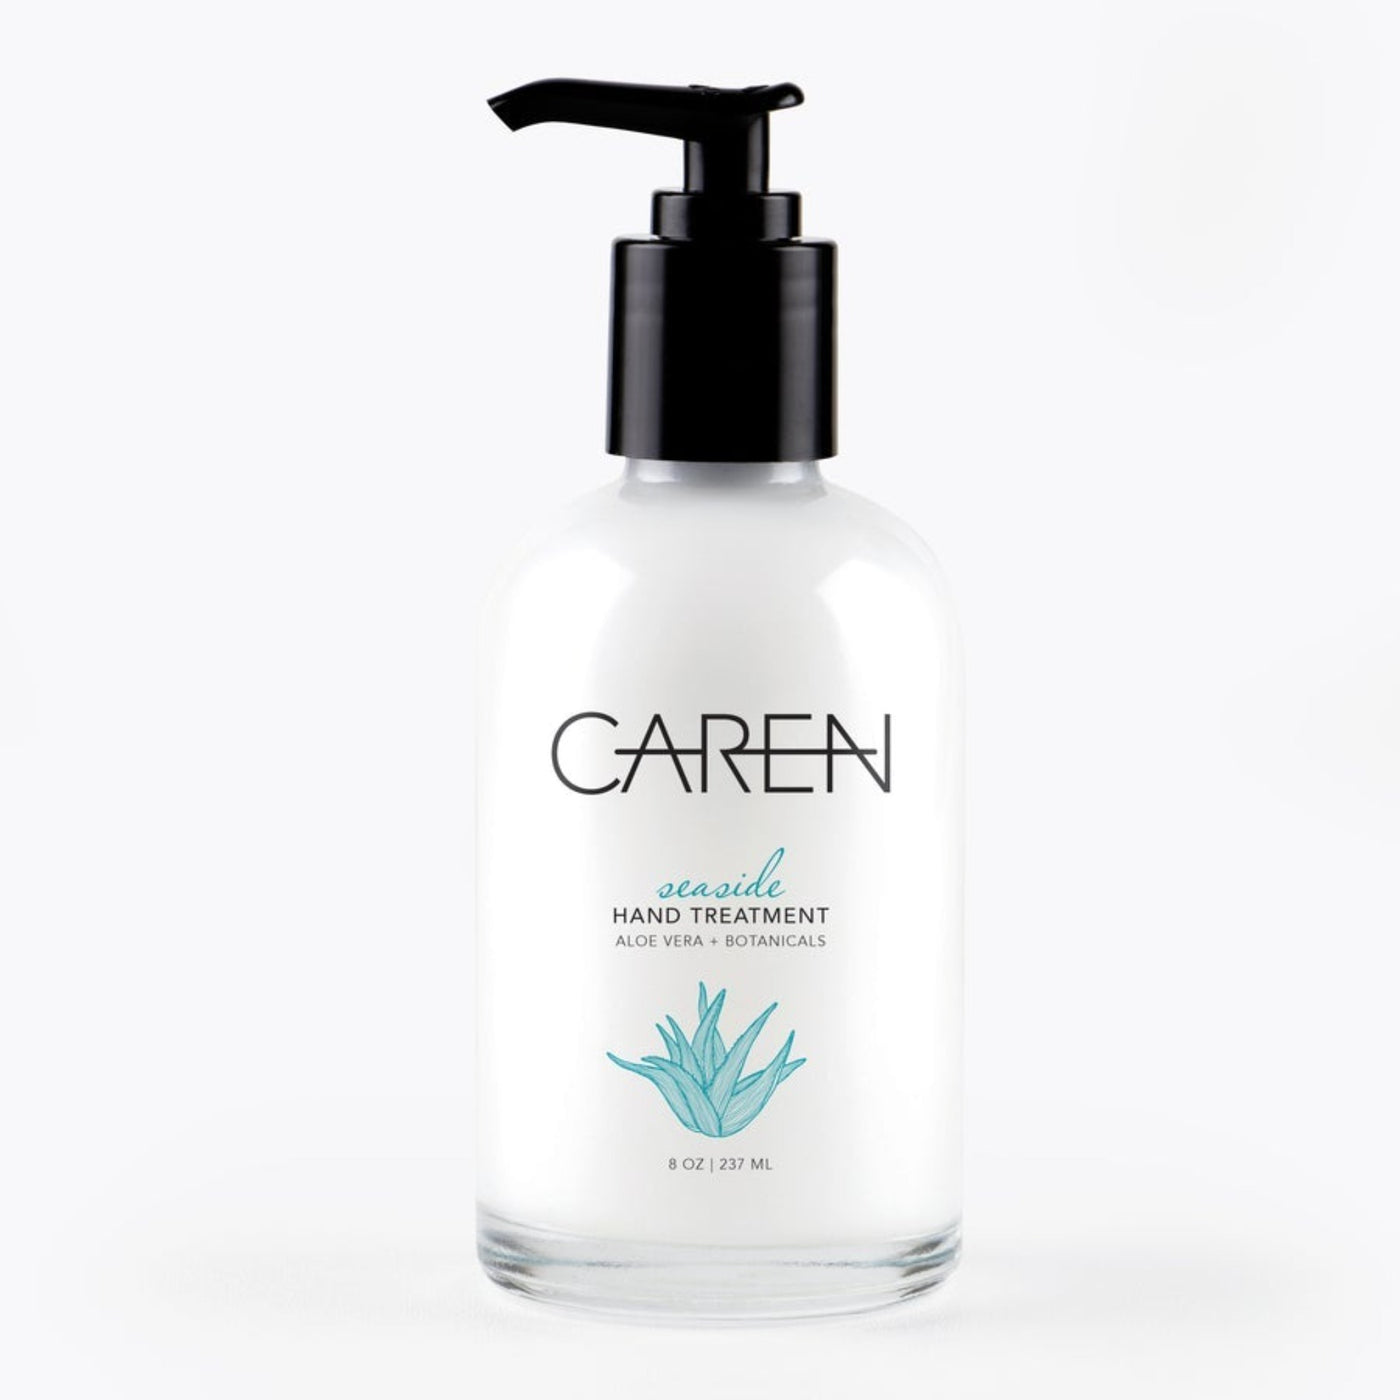 Caren - Seaside Hand Treatment Glass Bottle